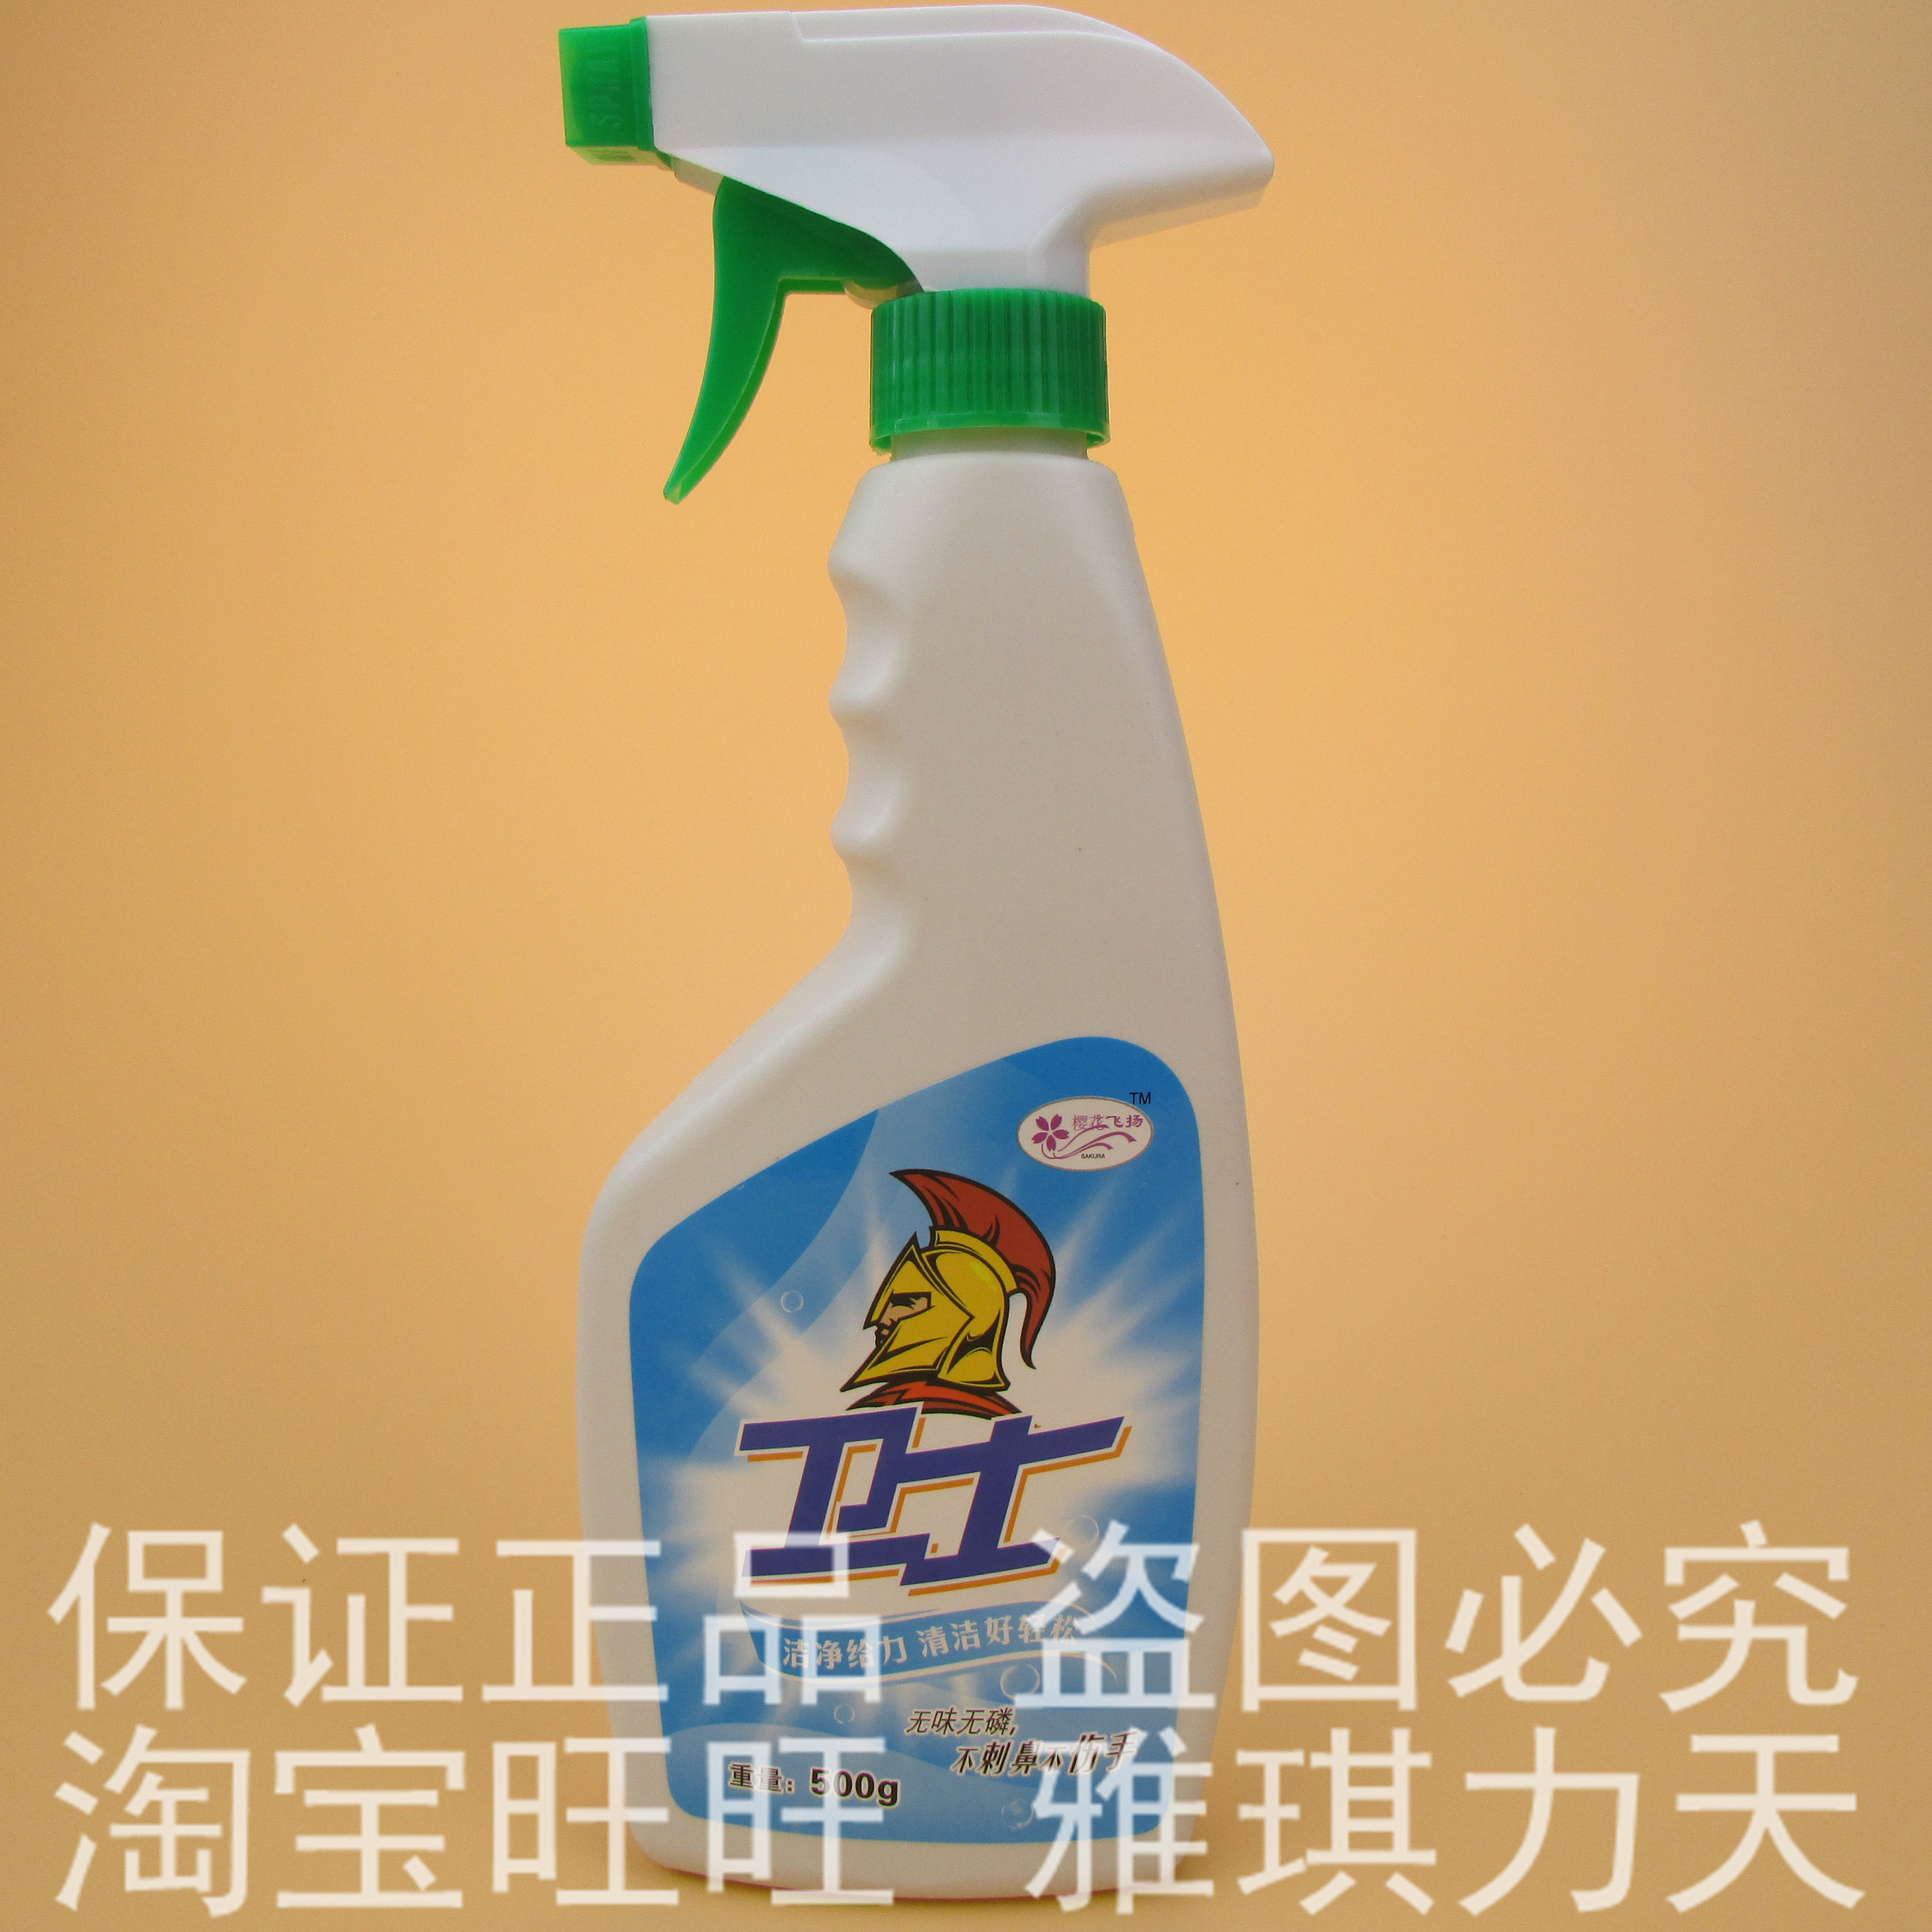 【官方直销】 卫士多功能油污净 清洁剂 清洗剂 单瓶装